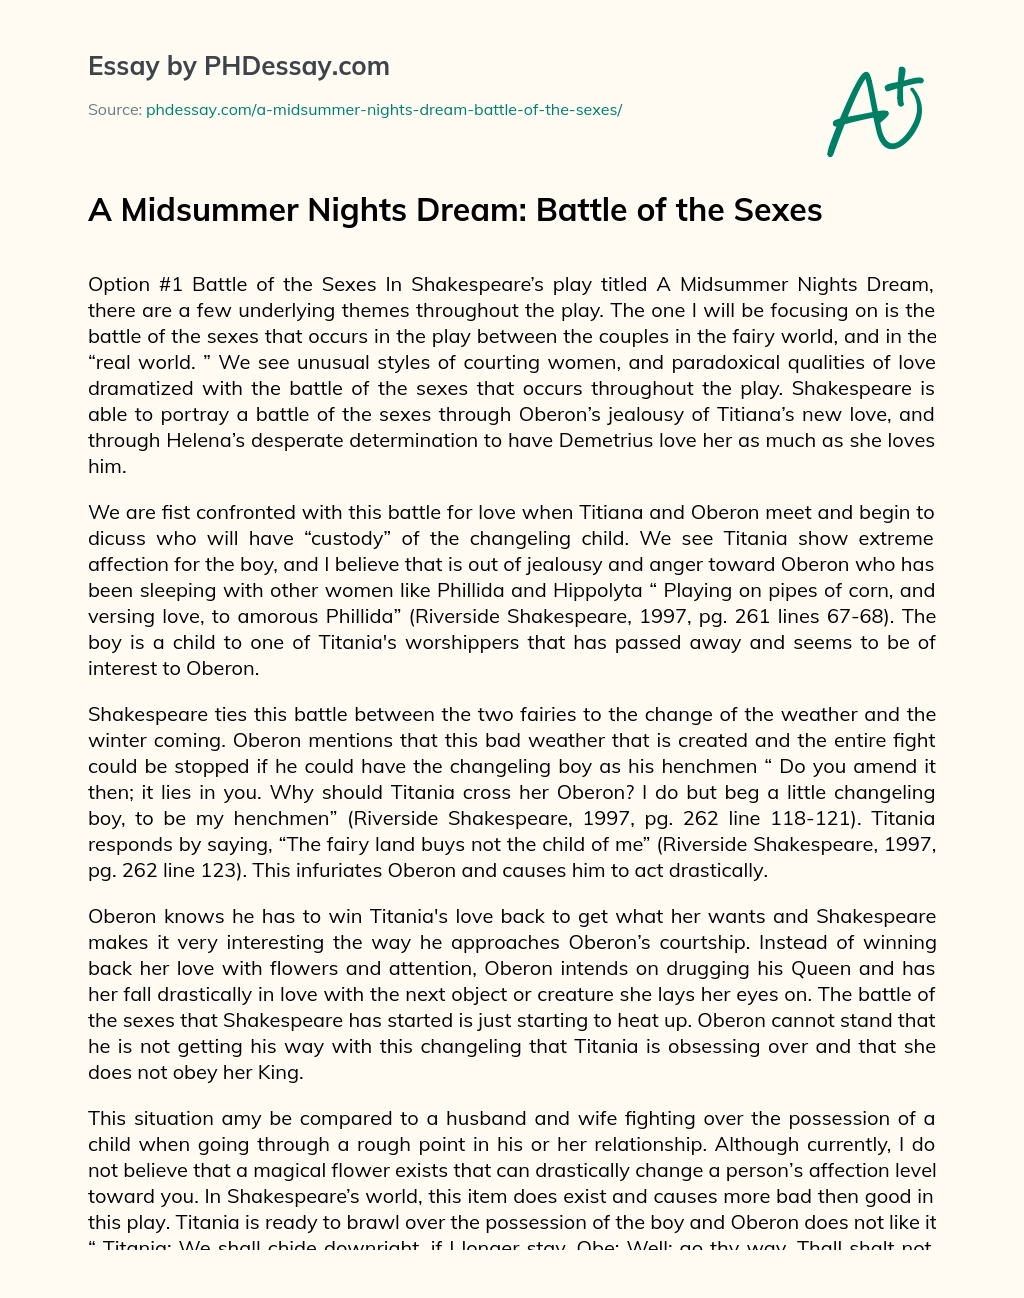 A Midsummer Nights Dream: Battle of the Sexes essay